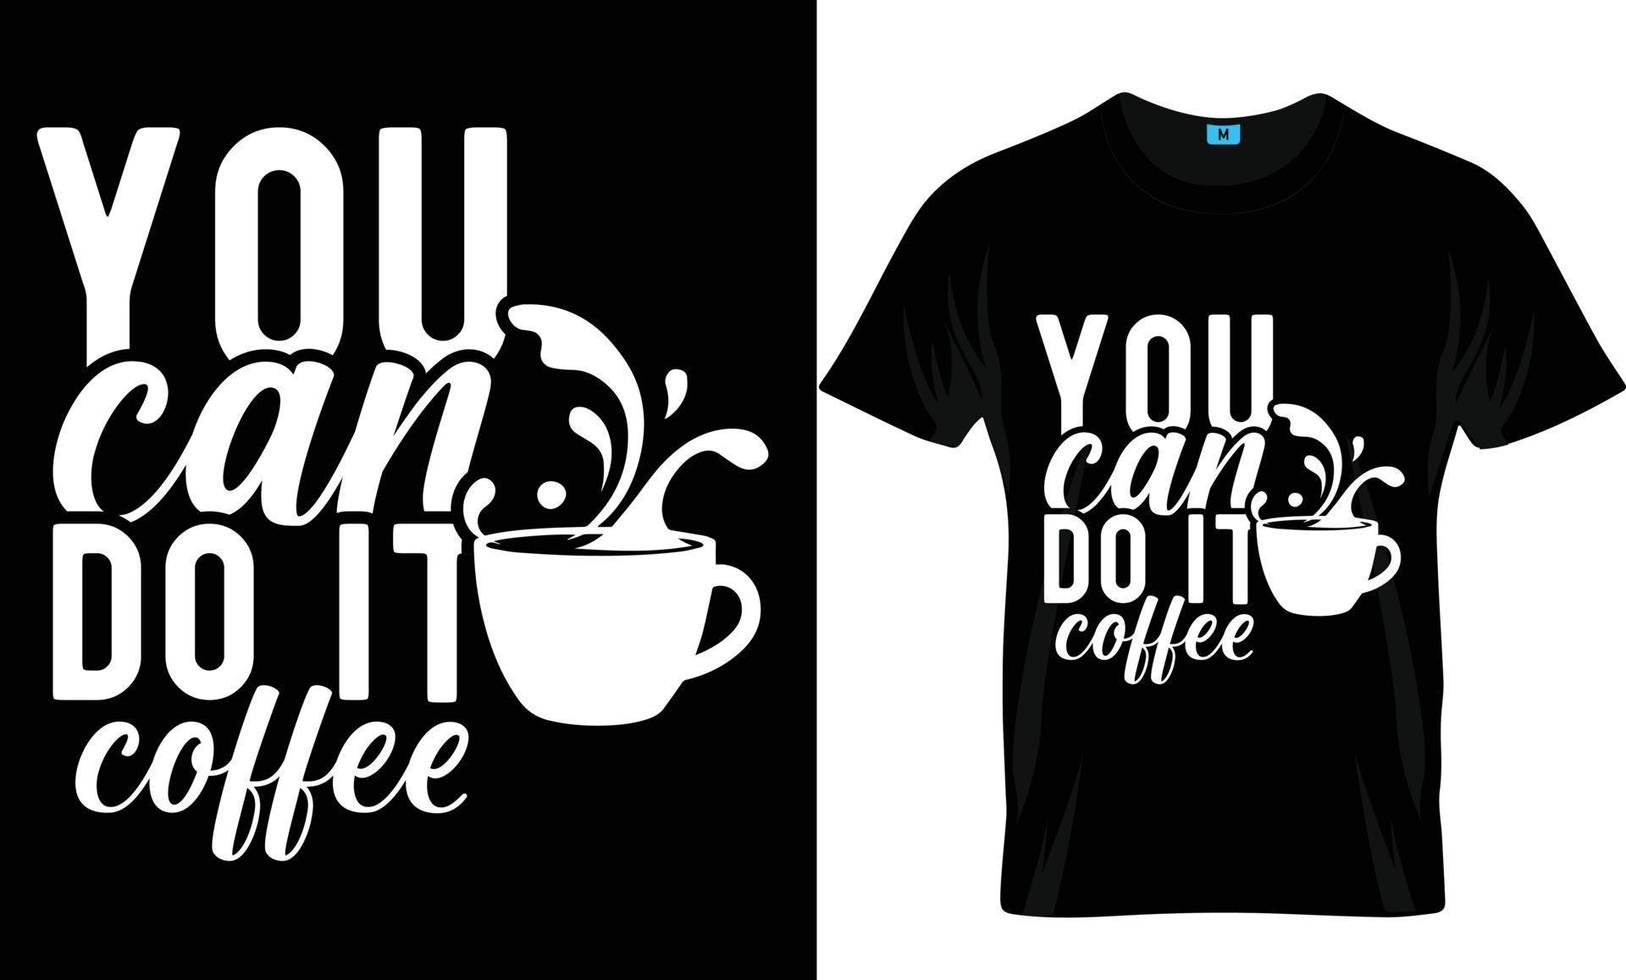 conception de t-shirt de café vecteur